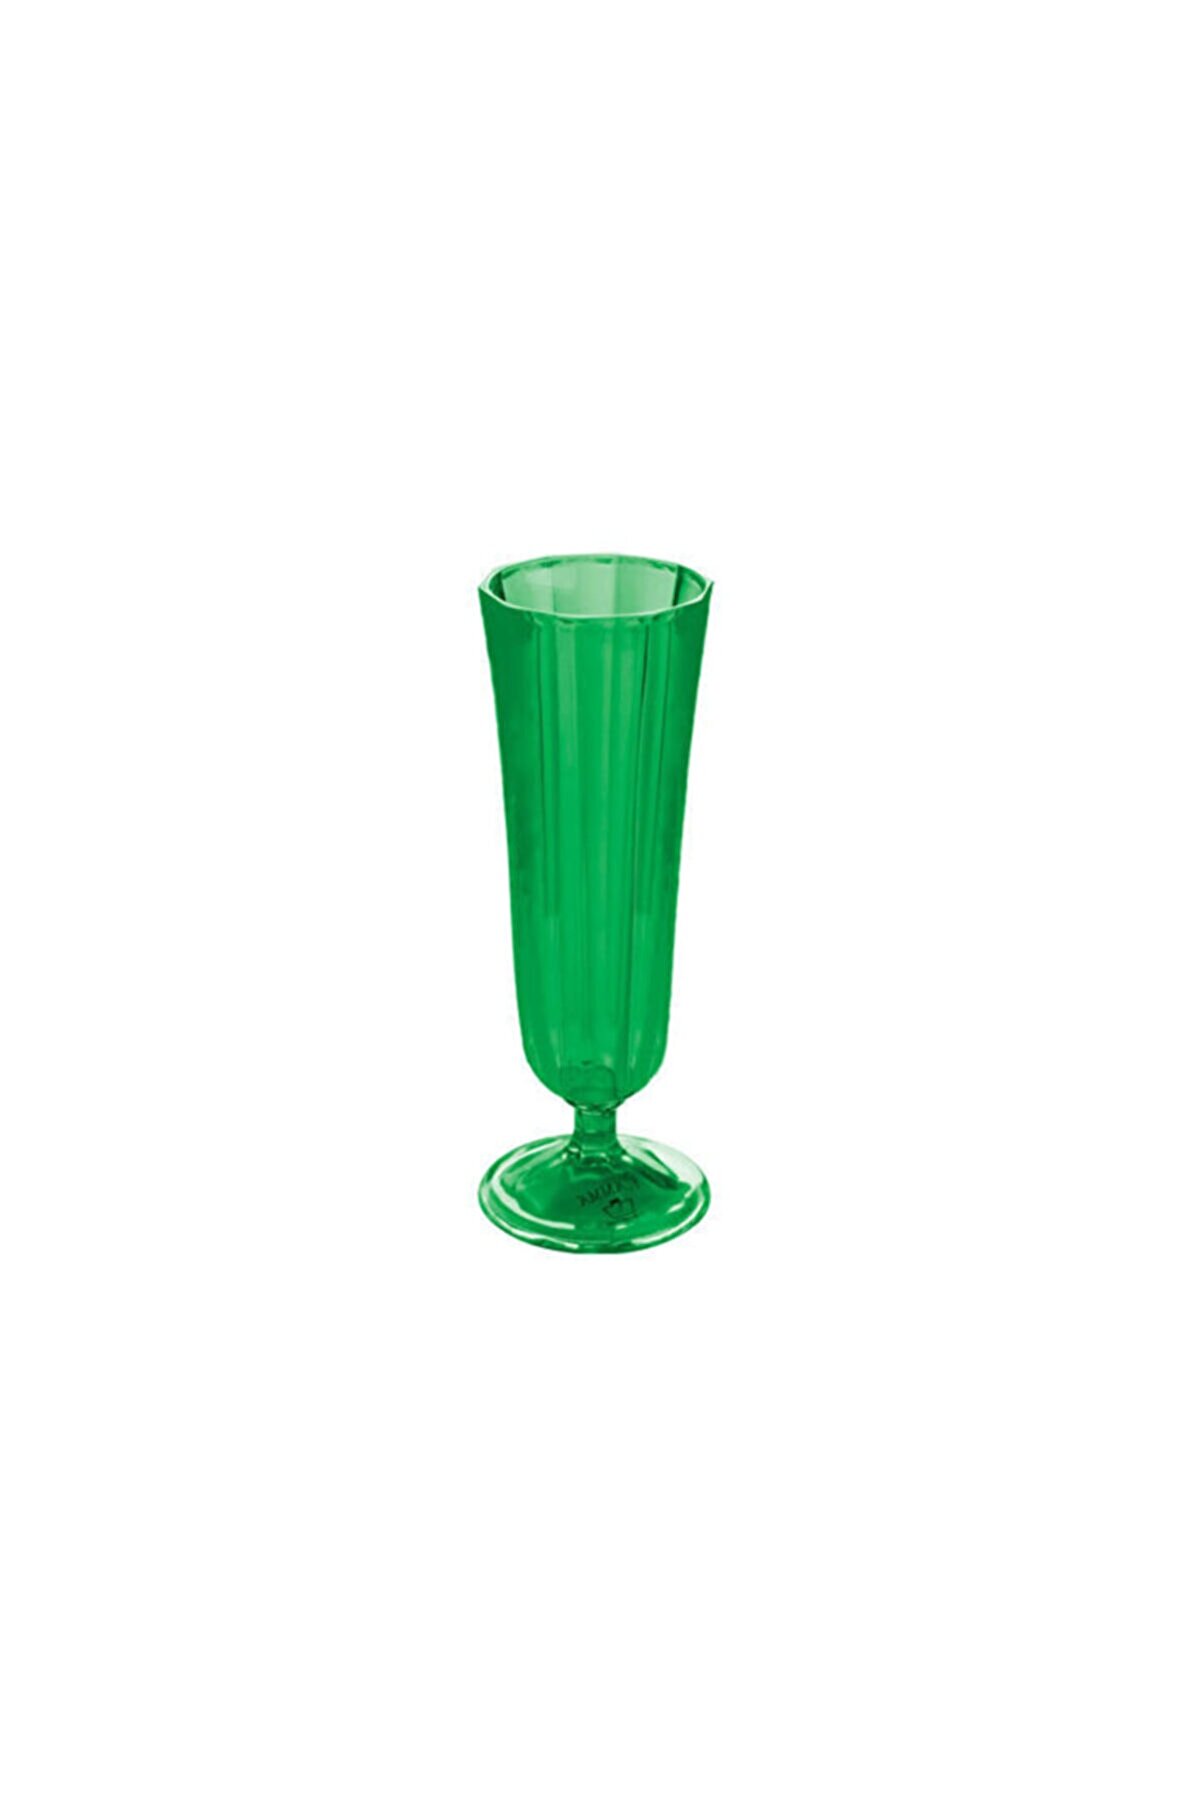 Porland Tradiation Yeşil Kahve Yanı Su Bardağı